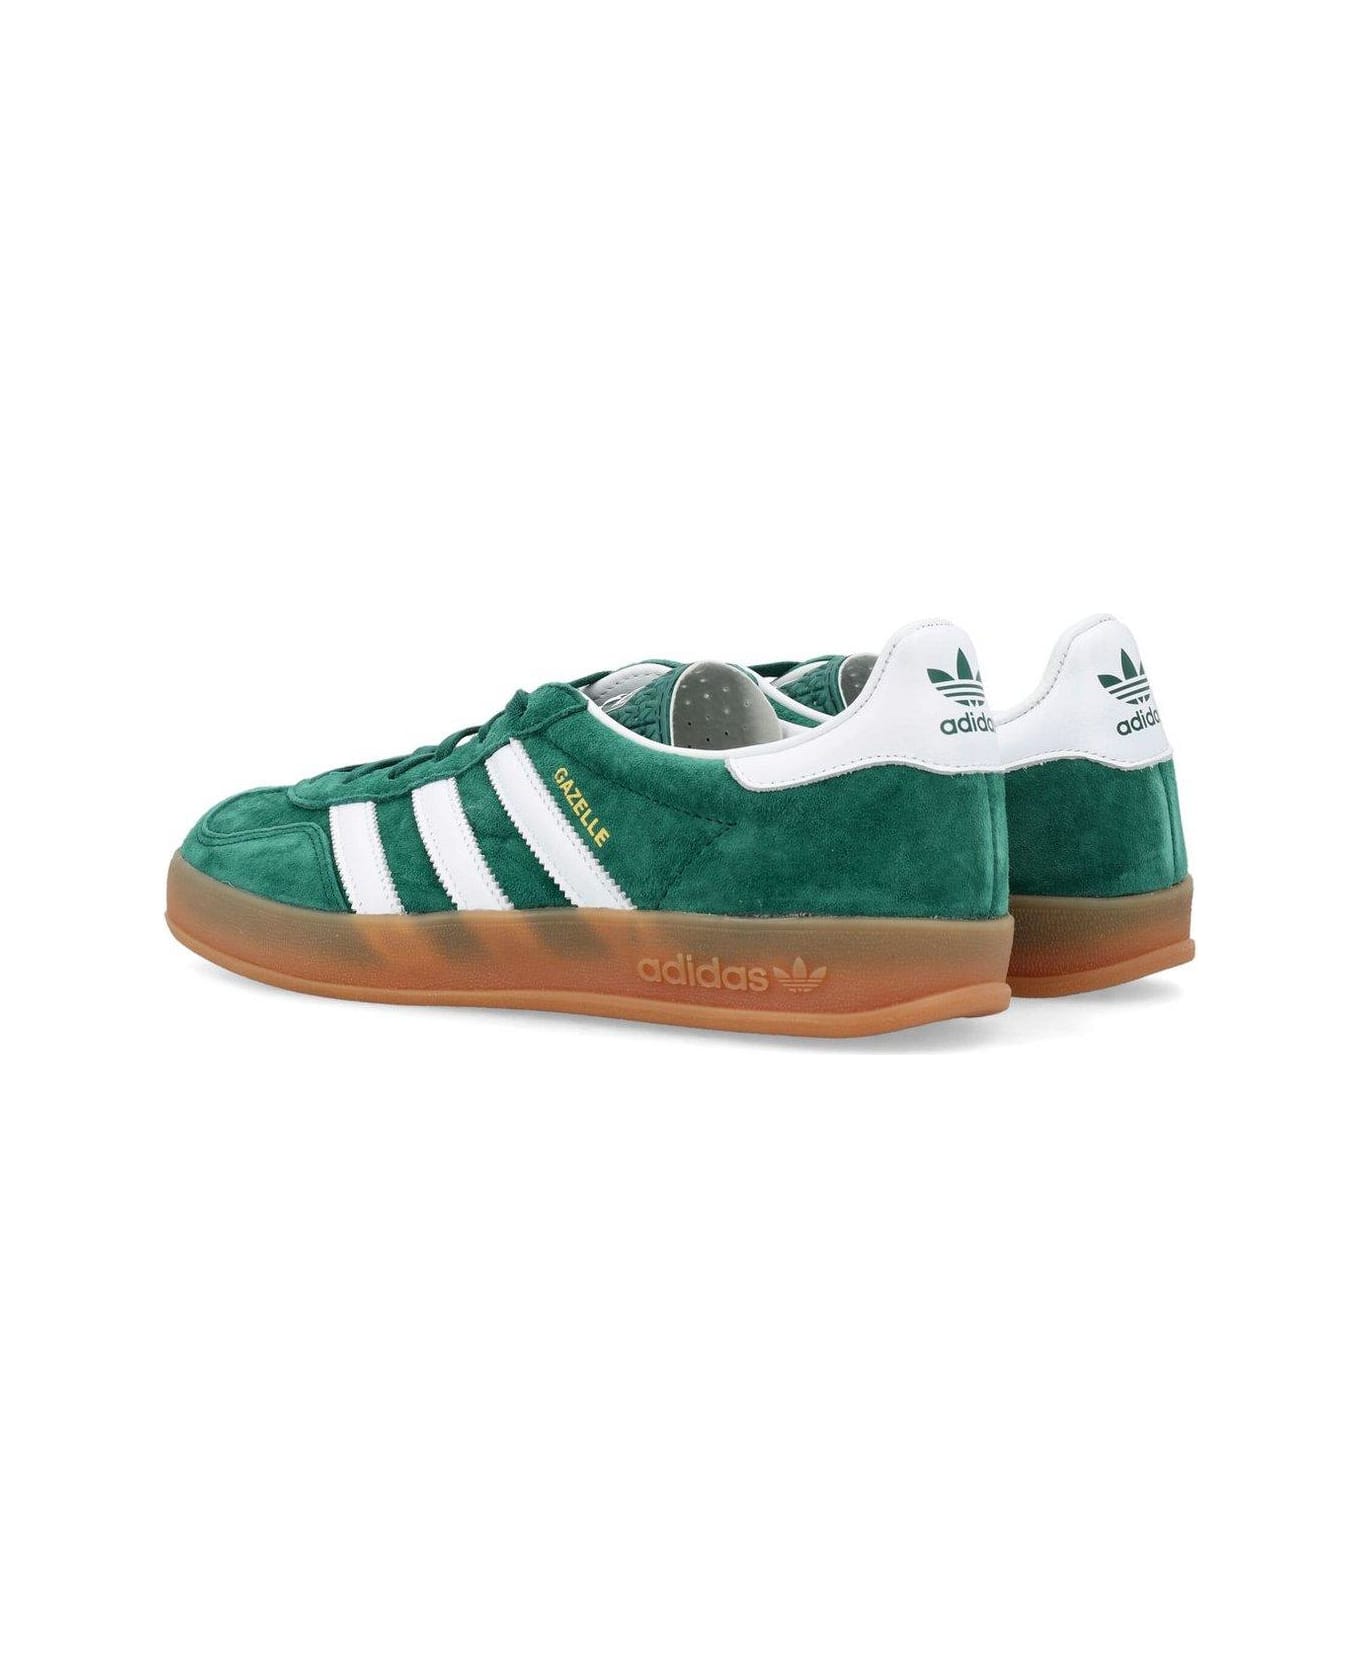 Adidas Gazelle Indoor Sneakers - Cgreen/ftwwht/gum2